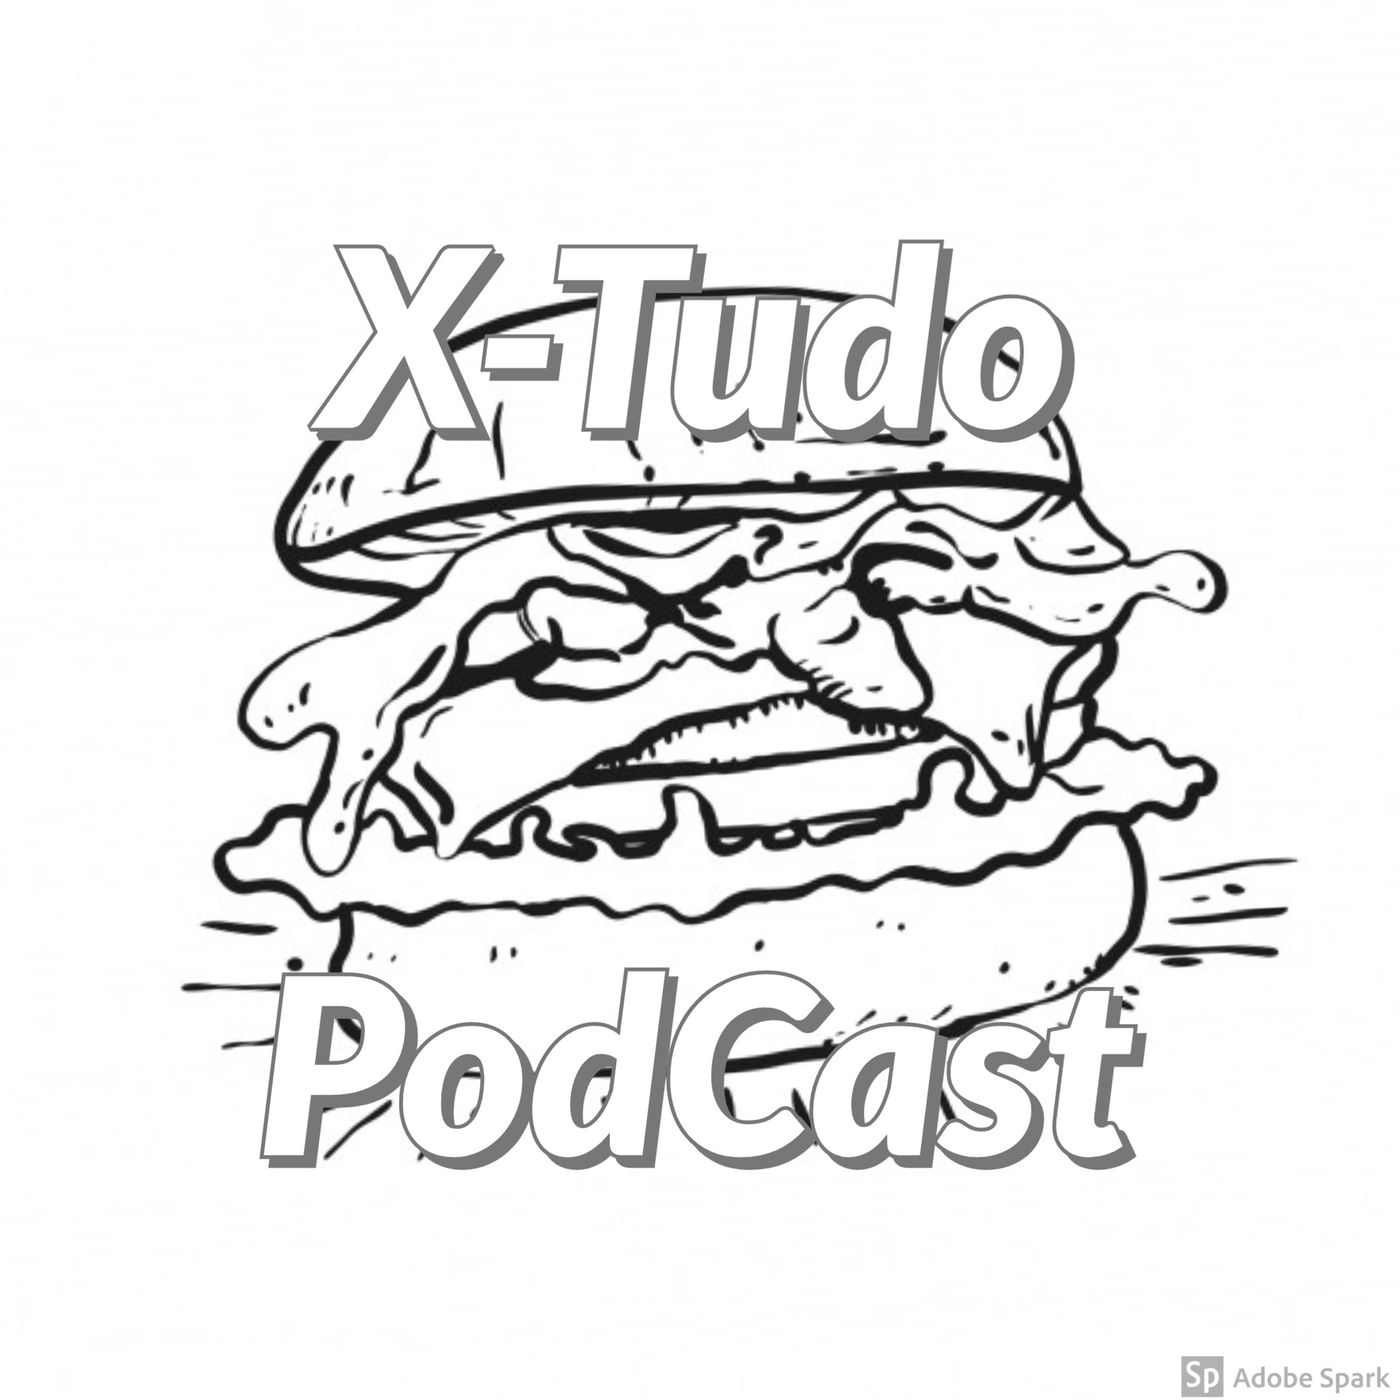 X-Tudo Podcast